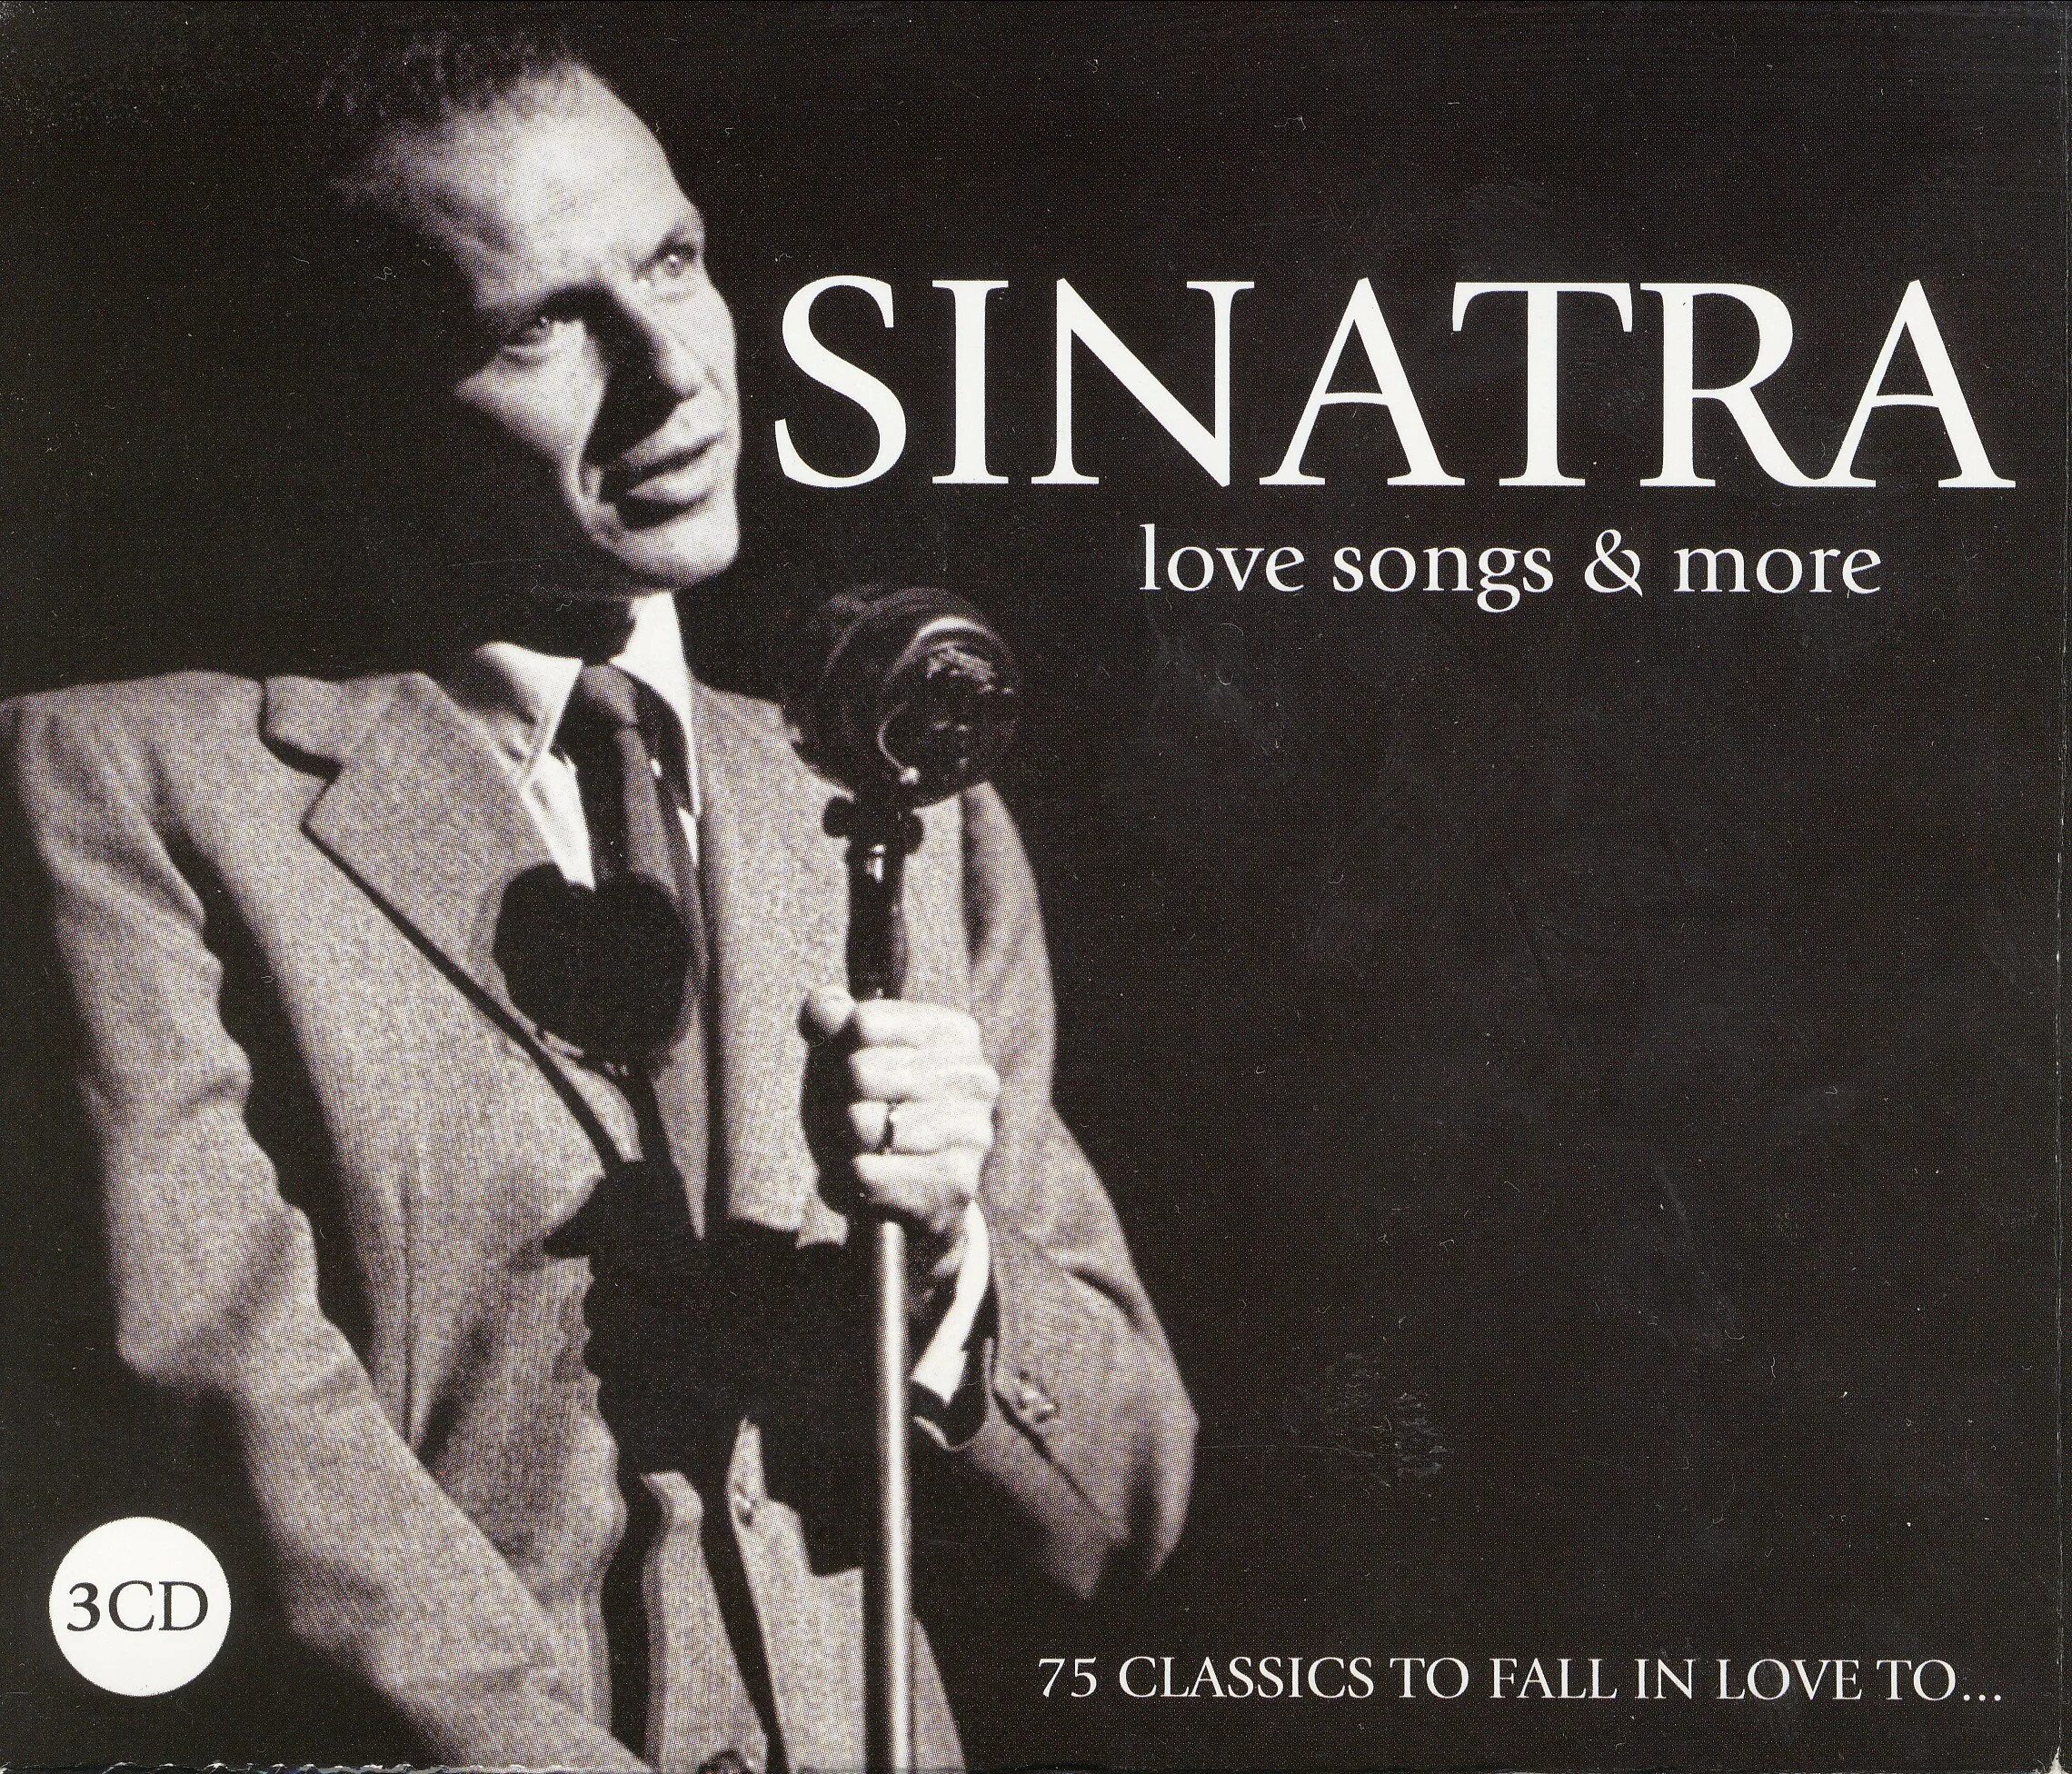 Любить фрэнка. Frank Sinatra Love. Фрэнк Синатра песни. Фрэнк Синатра альбомы фото. Джаз композиции Фрэнк Синатра.